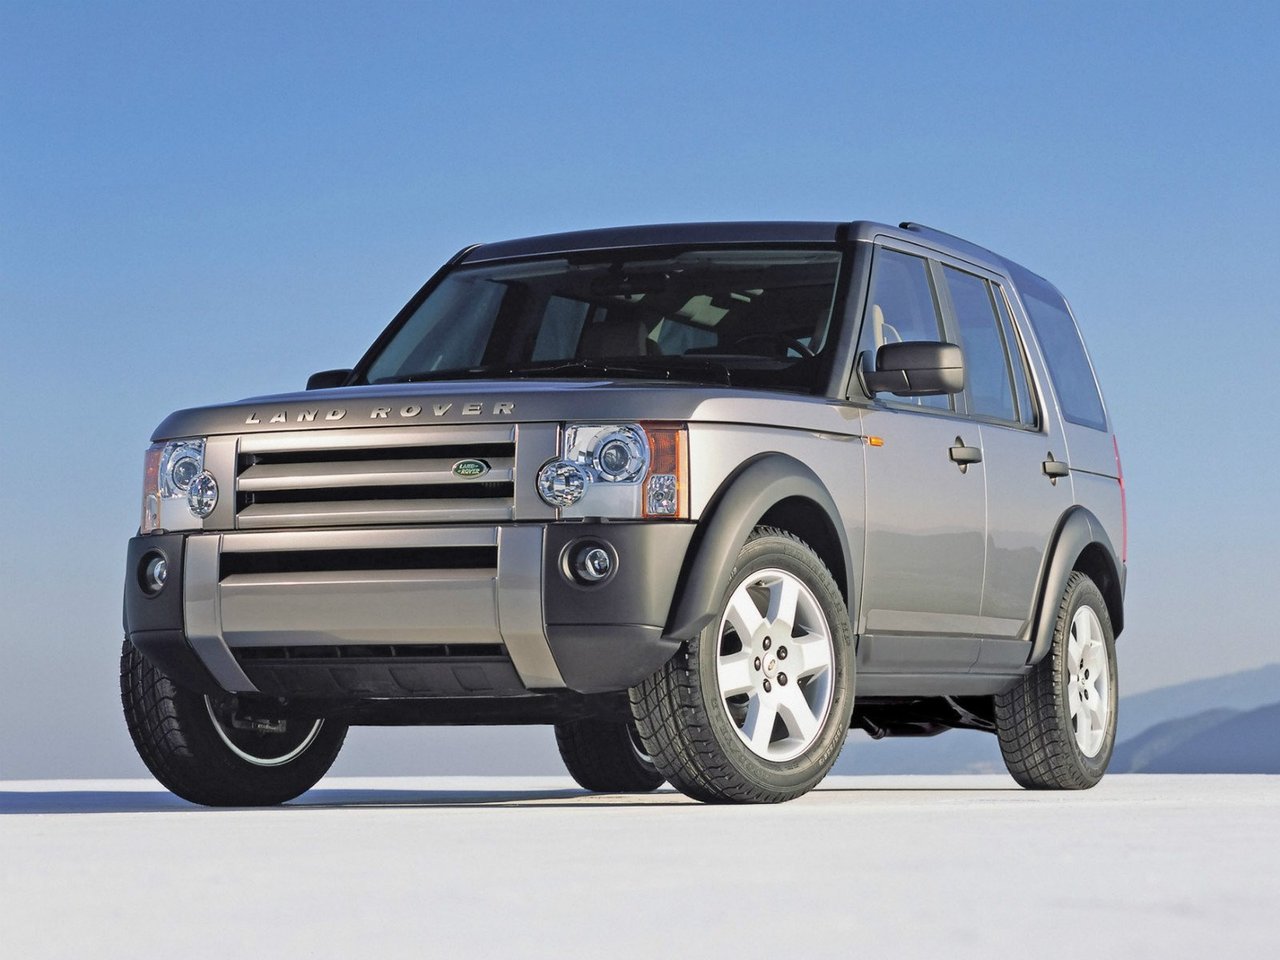 Расход газа одной комплектации внедорожника пять дверей Land Rover Discovery. Разница стоимости заправки газом и бензином. Автономный пробег до и после установки ГБО.